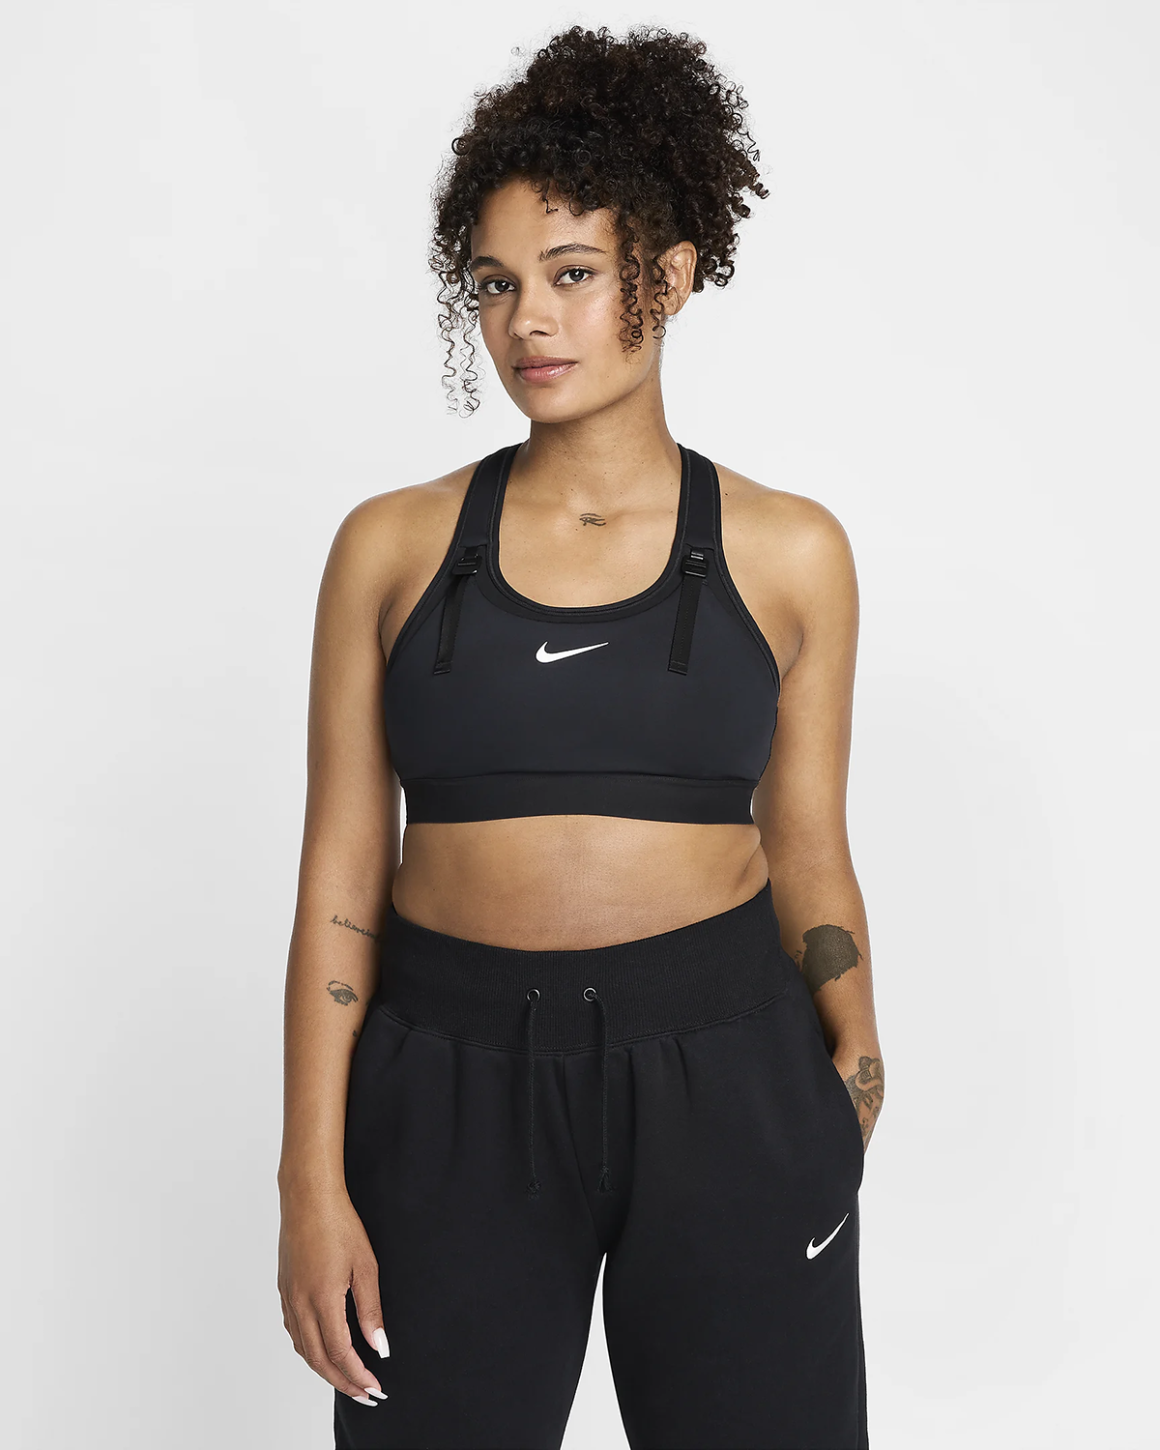 Nike推出了一款专门为哺乳母亲设计的运动胸罩